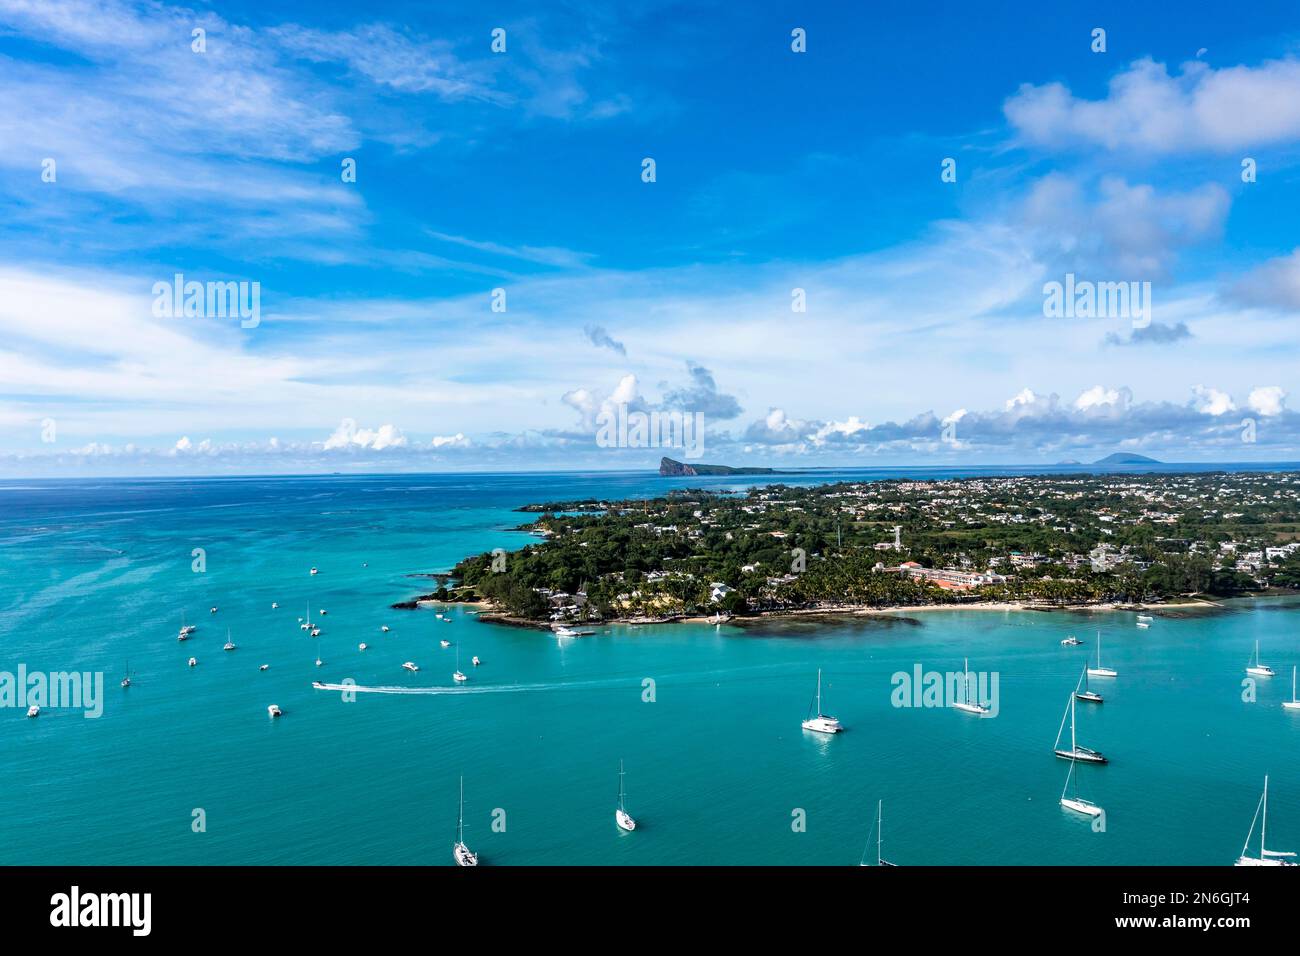 Luftbild, Strände mit Luxushotels mit Wassersport und Booten in Grand Baie, Region Pamplemousses, Mauritius Stockfoto